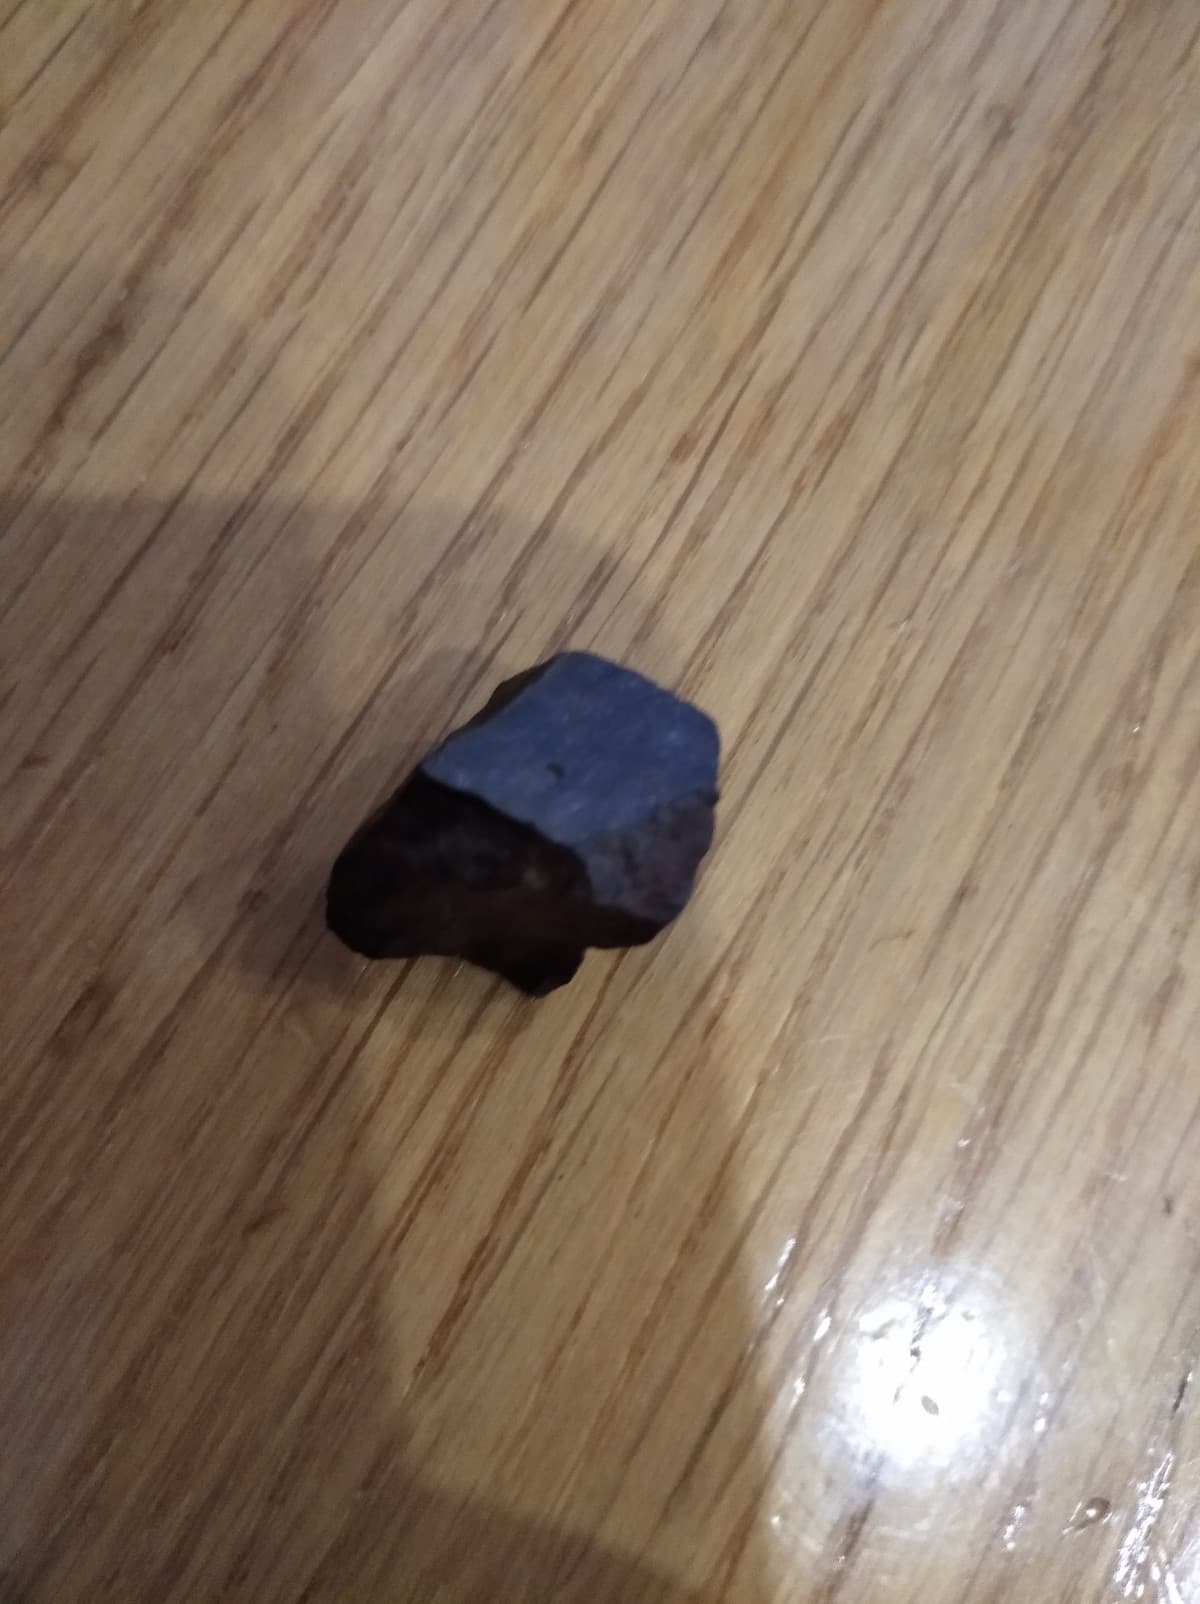 Se vi dicessi che questo non è un semplice sasso ma è un frammento di un meteorite non ci credereste immagino? Comunque sia, questa è una Condrite, in modo specifico una Condrite Ordinaria di tipo H. La si riconosce per via dell'elevato contenuto di ferro 